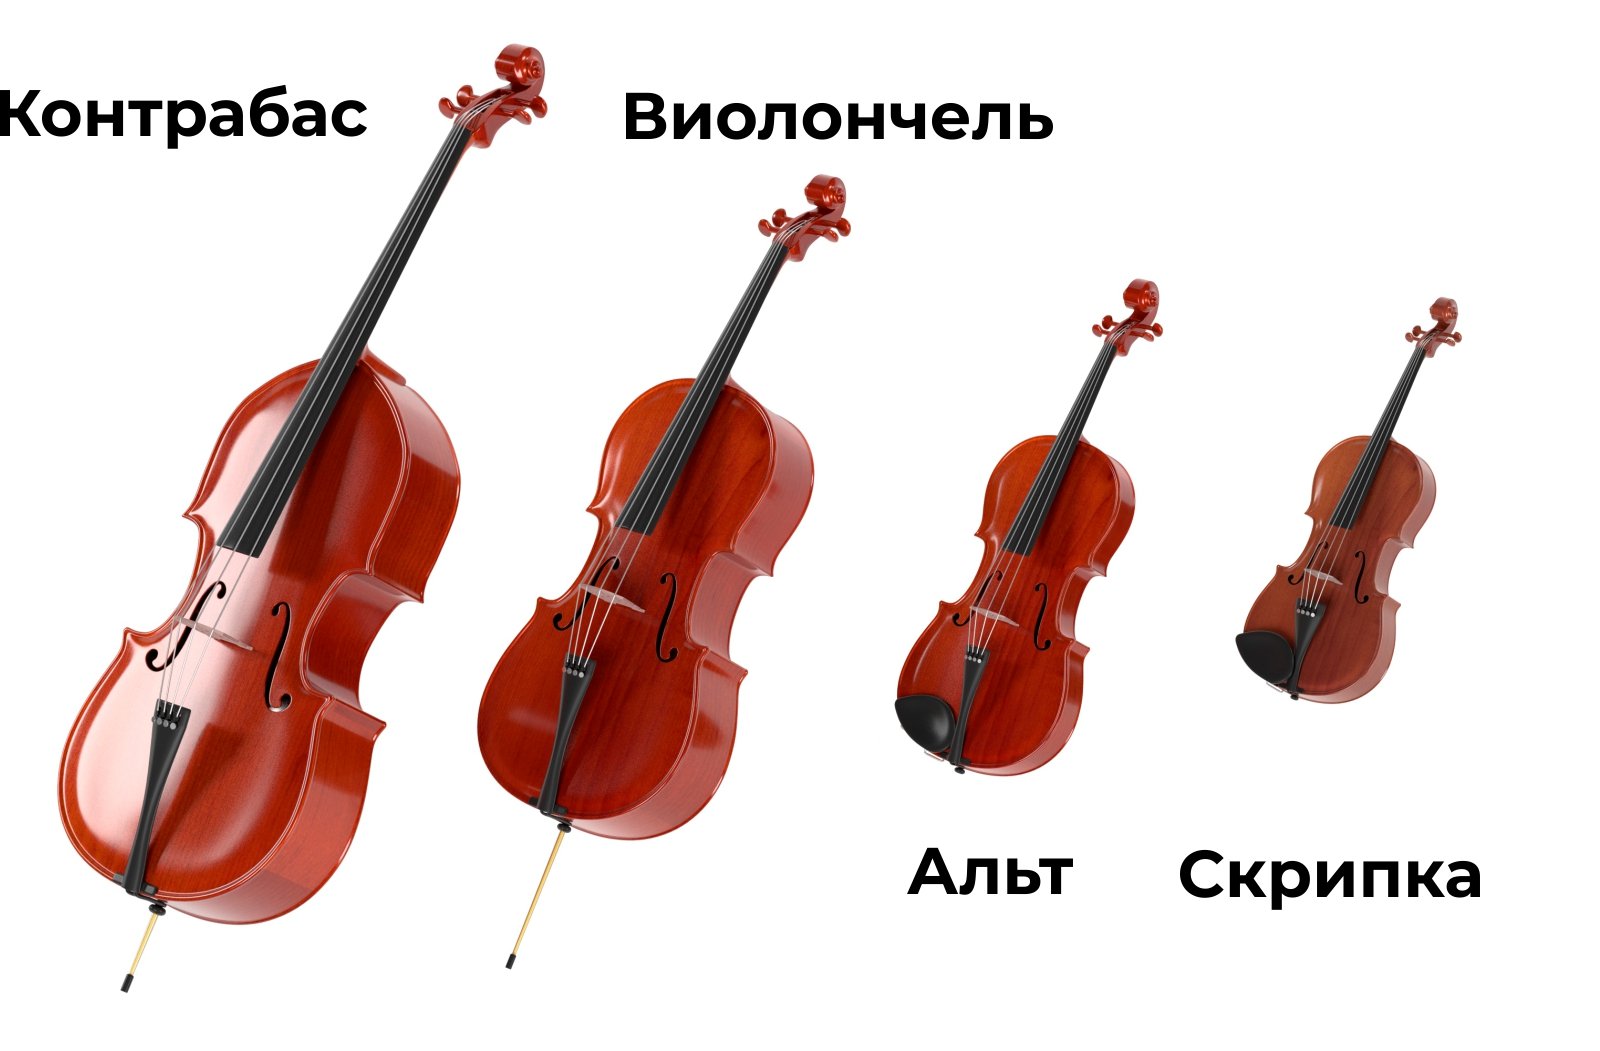 Скрипка Альт виолончель контрабас отличия